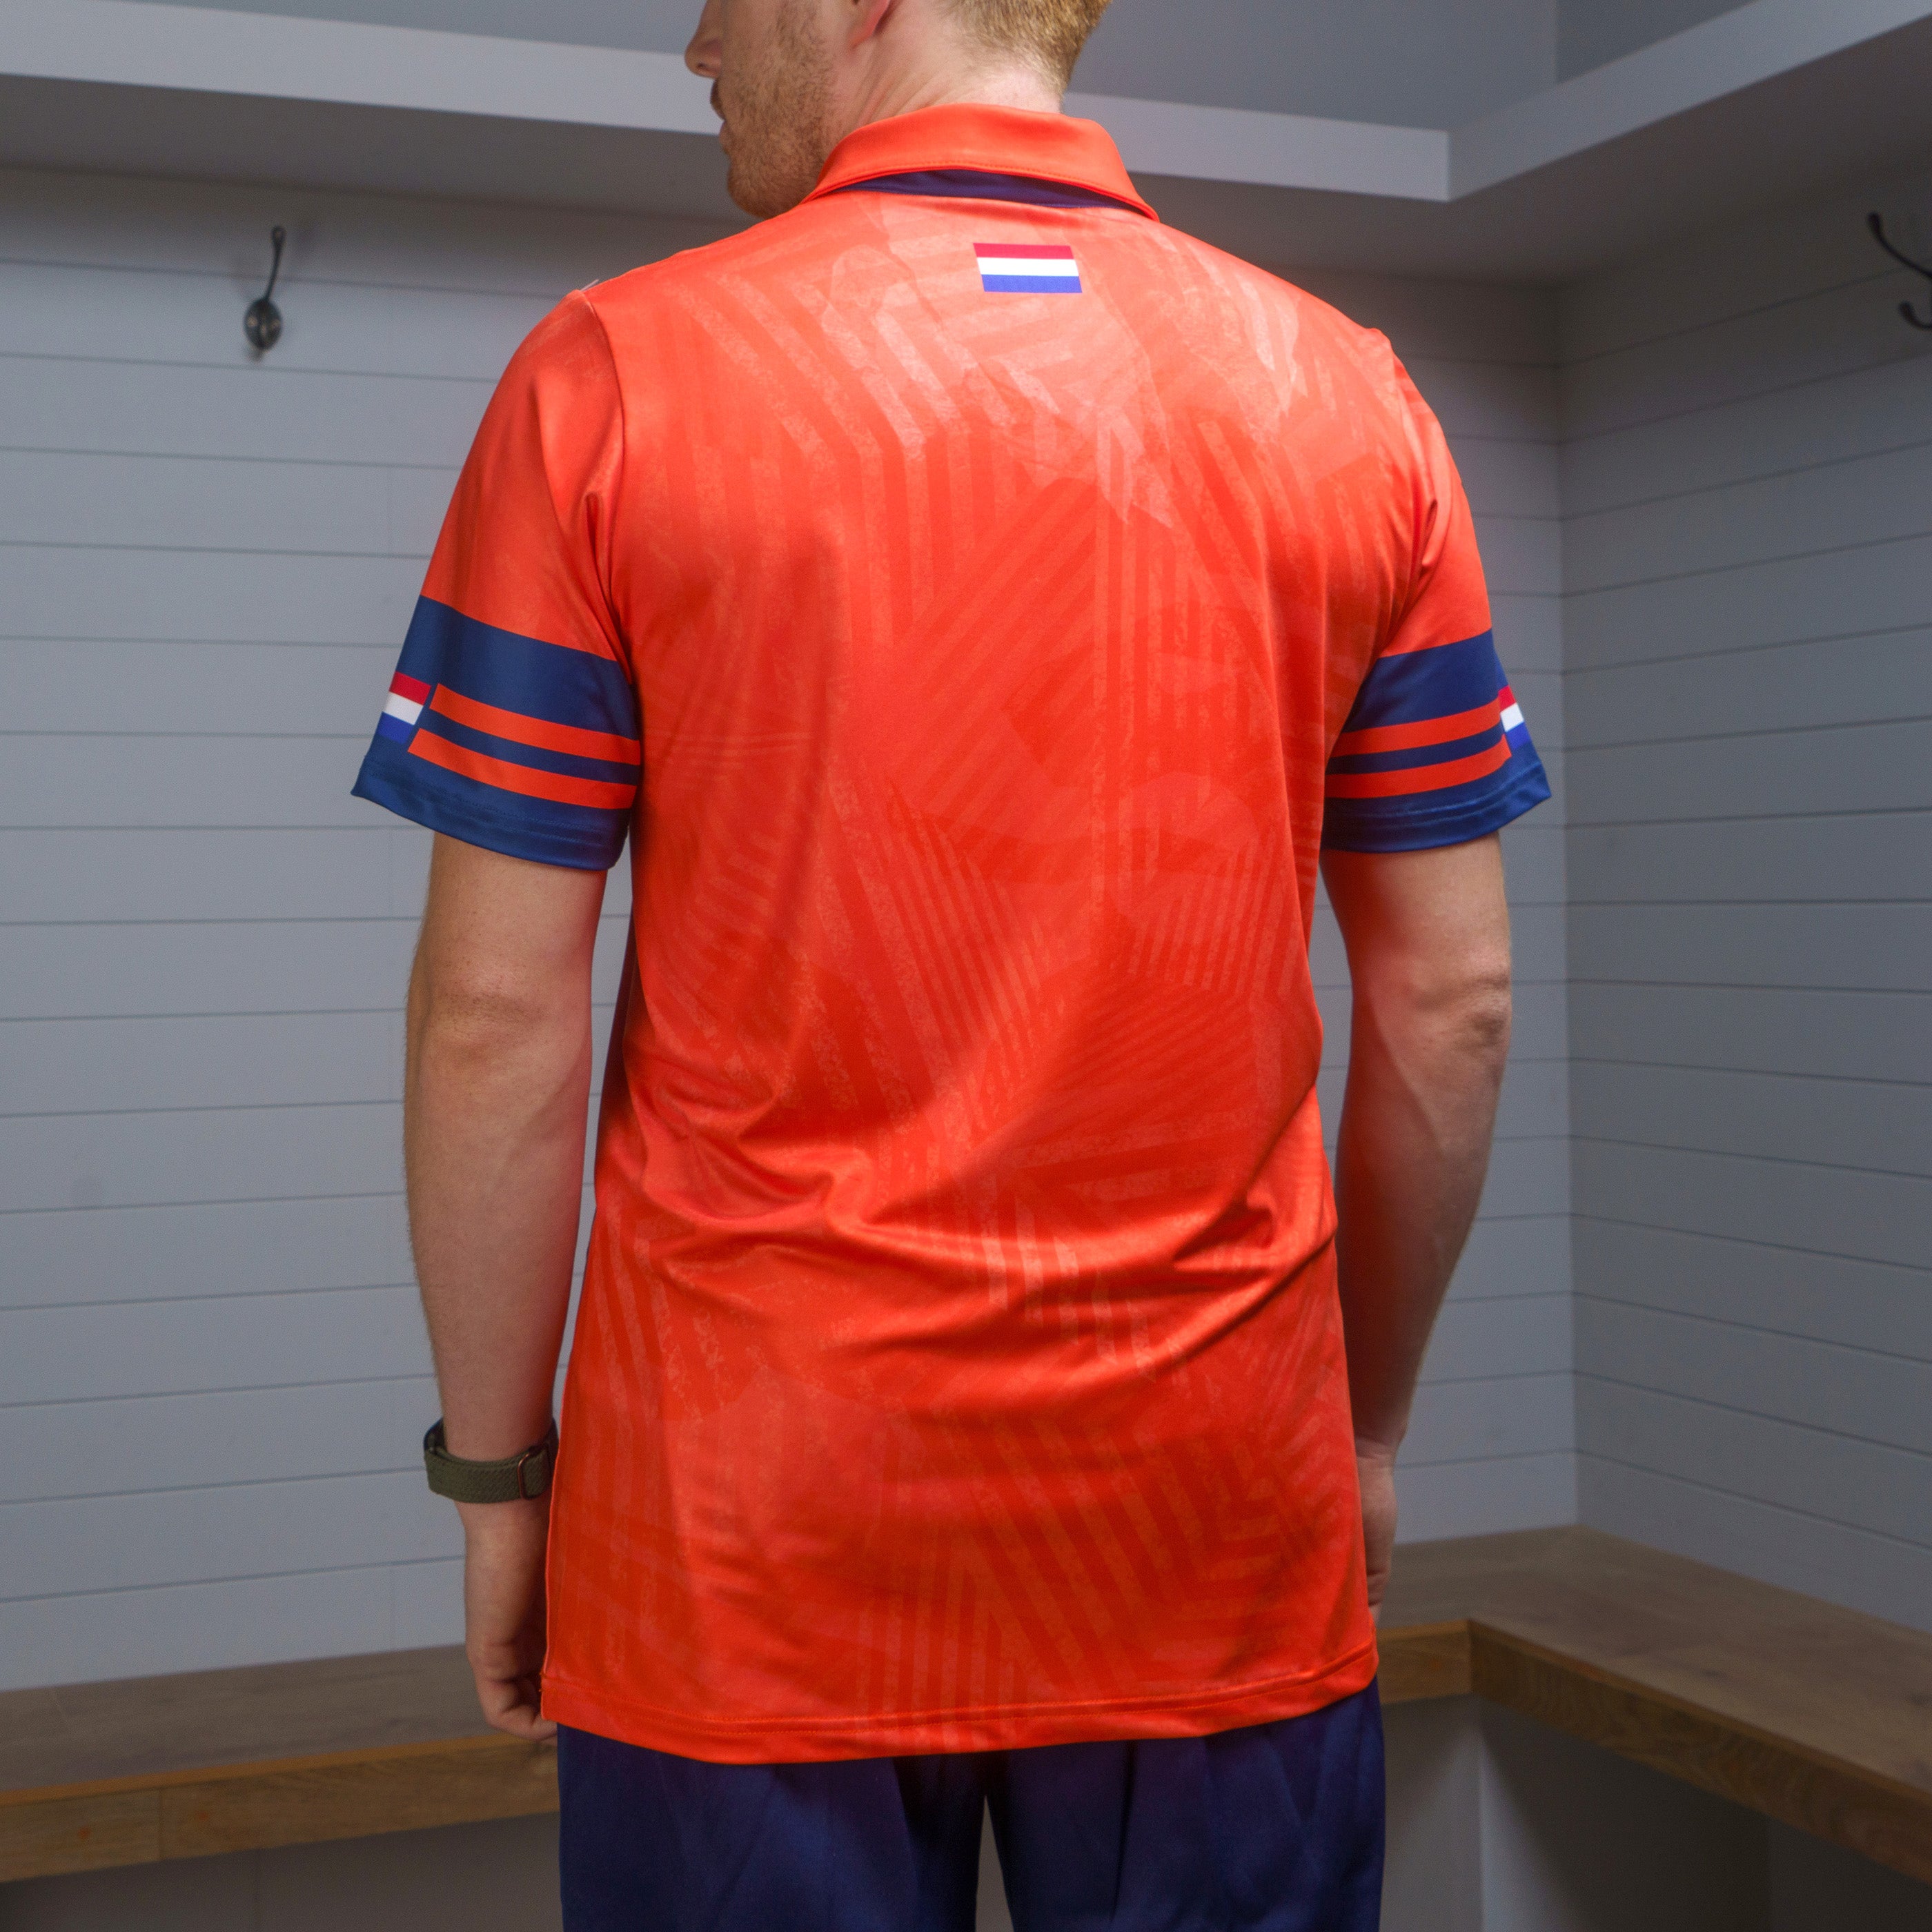 Netherlands CWC23 Match Shirt - Junior